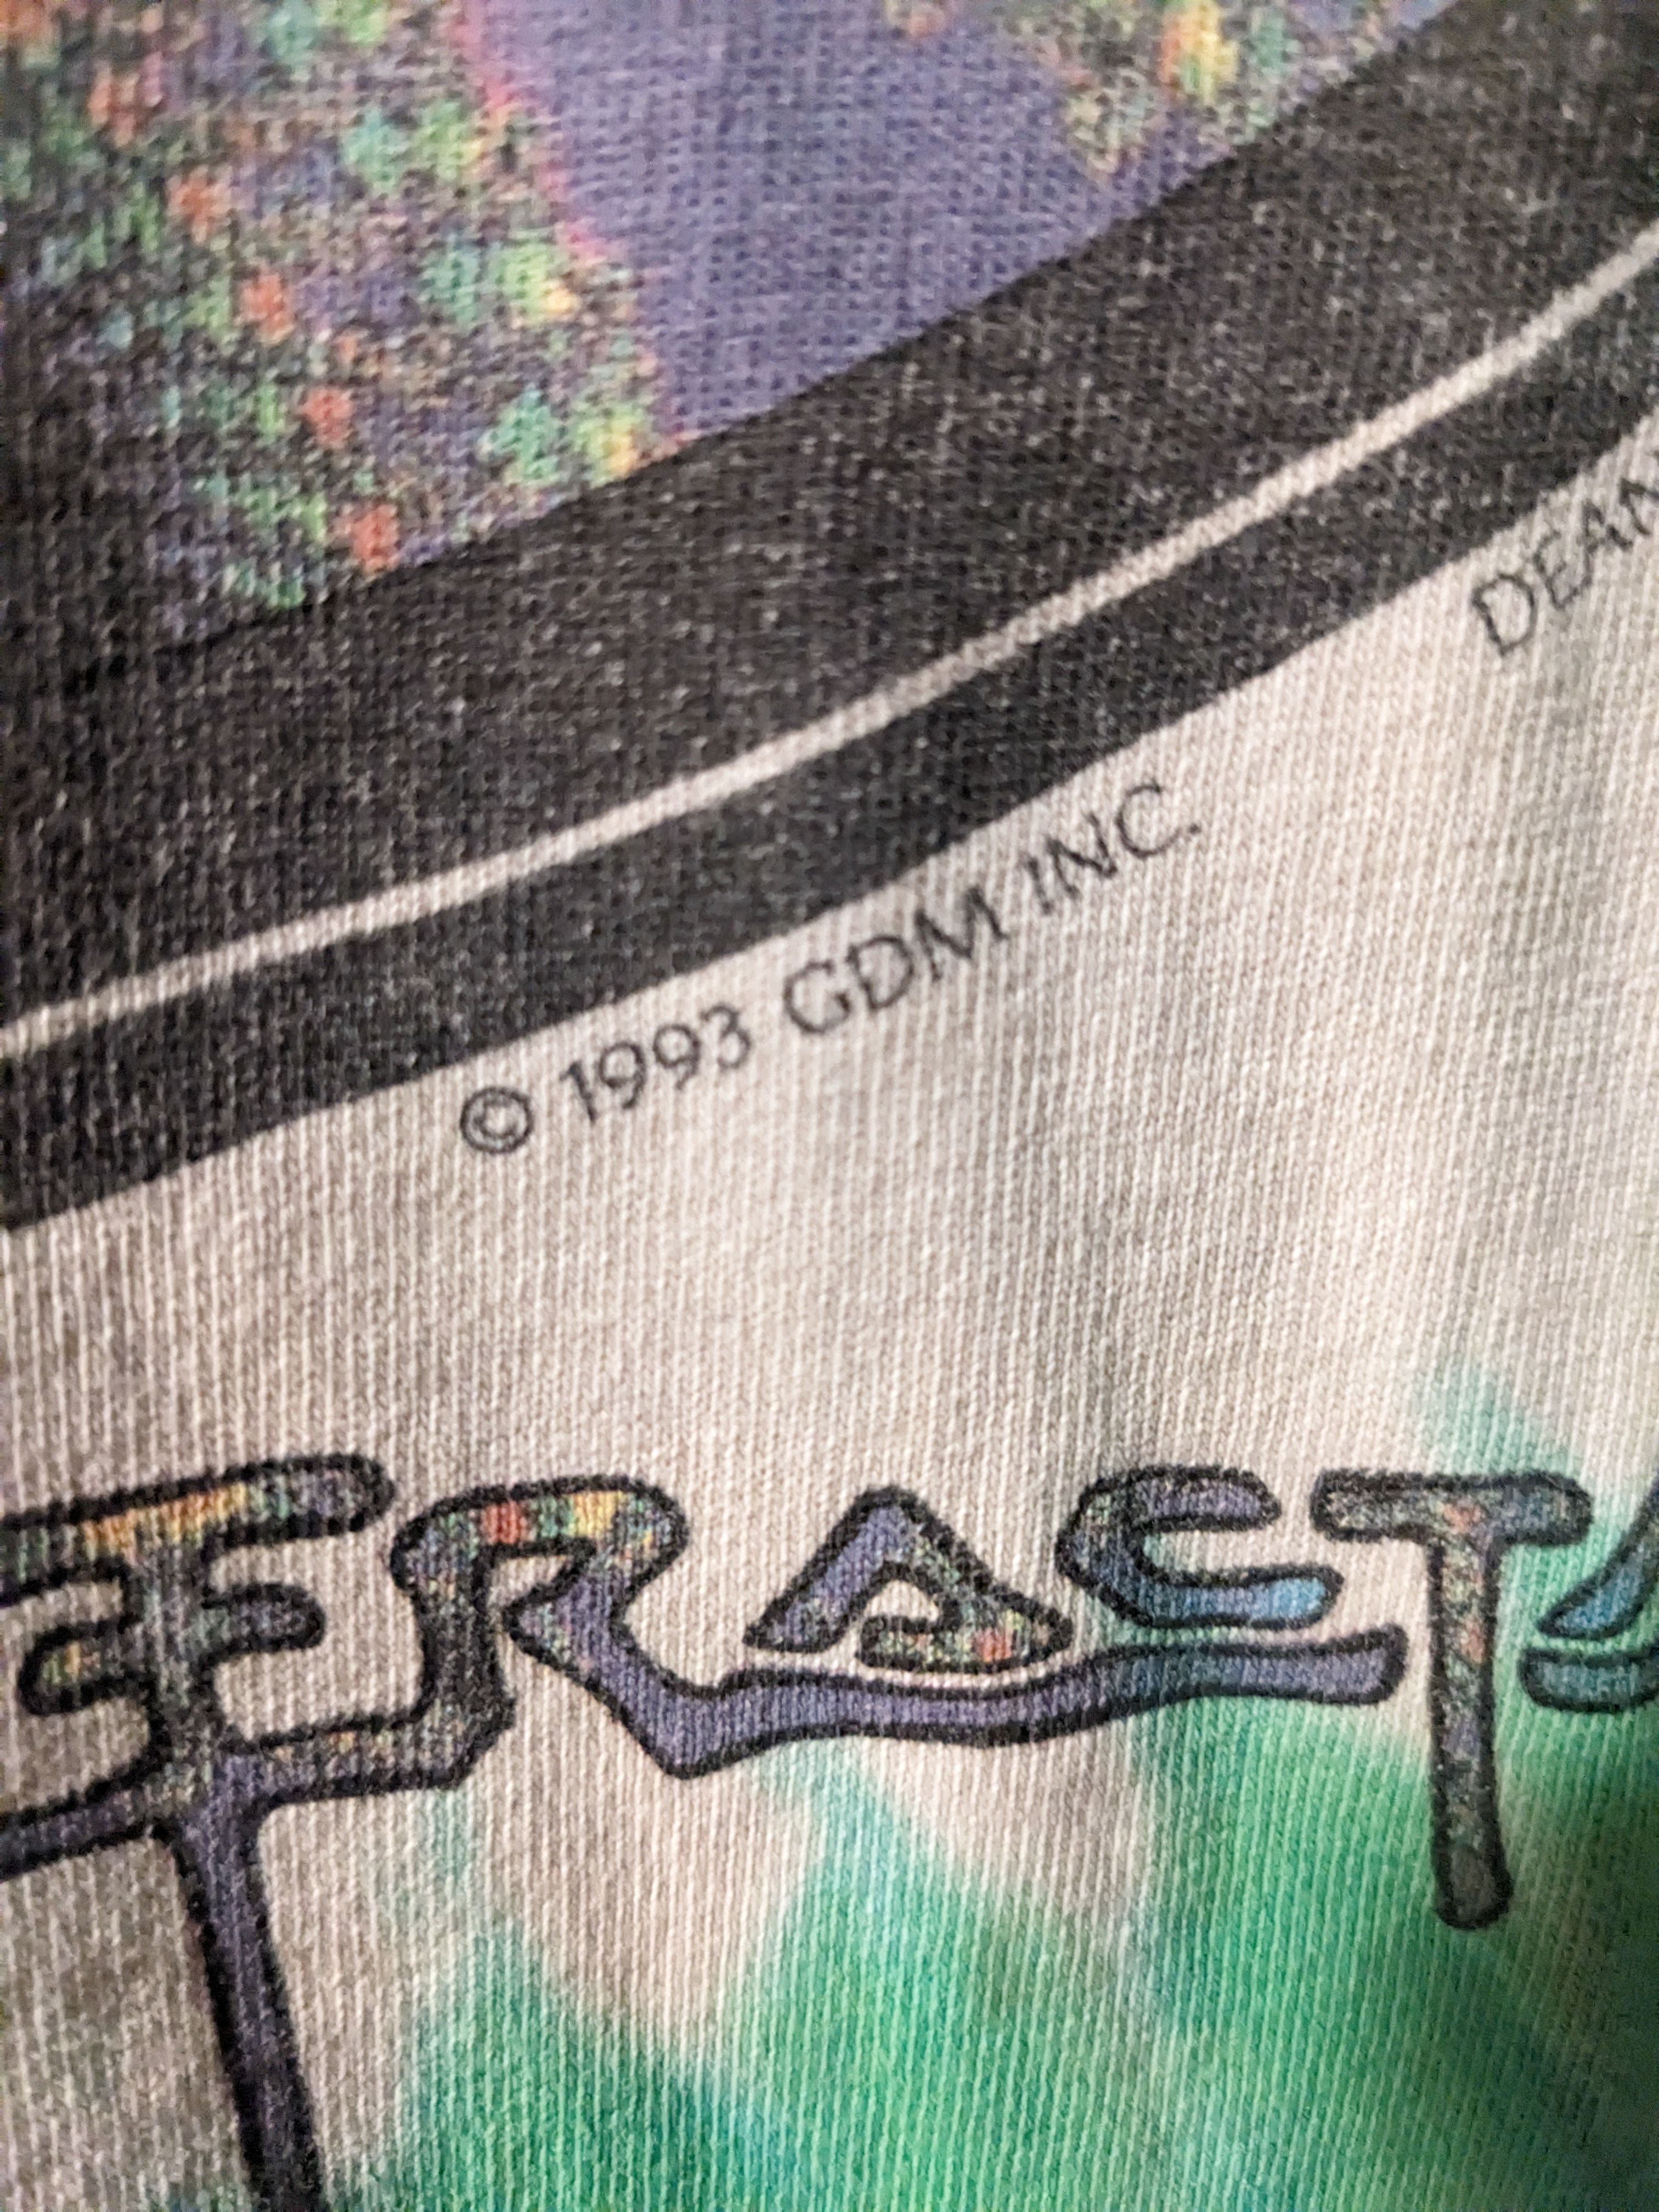 Vintage Vintage 1993 Grateful Dead Steal Your Fractal XL T-Shirt Size US XL / EU 56 / 4 - 3 Thumbnail